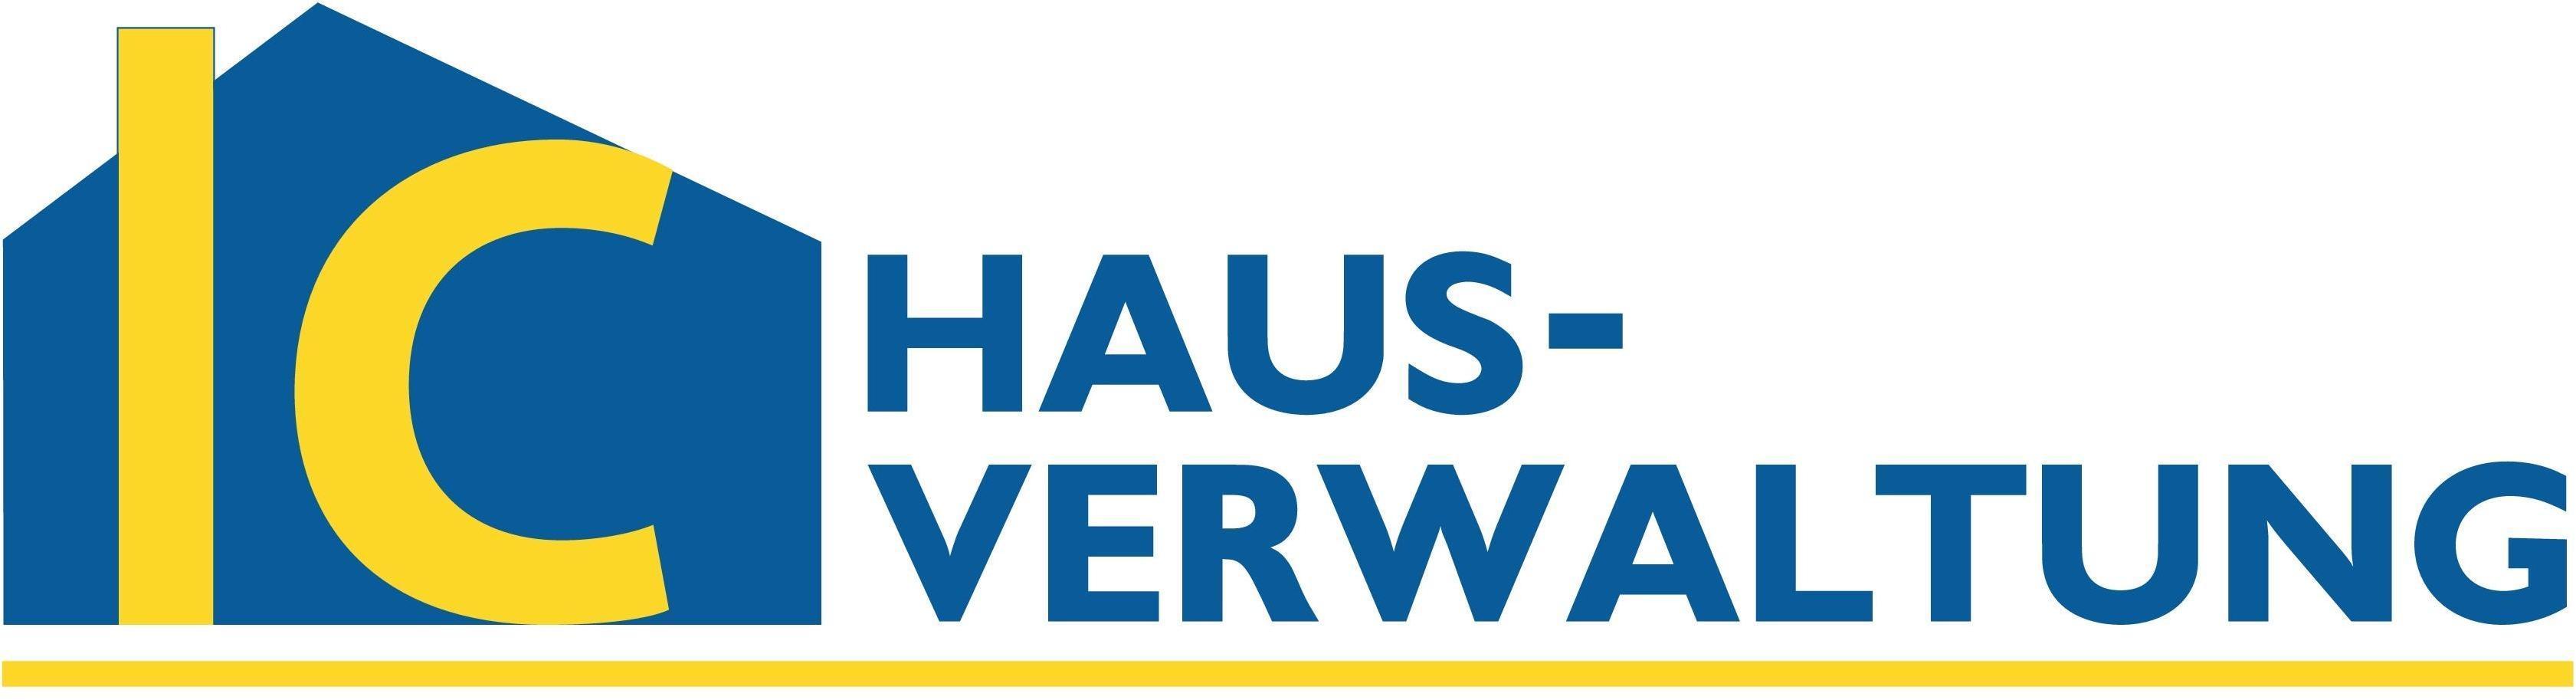 Logo IC-Hausverwaltung